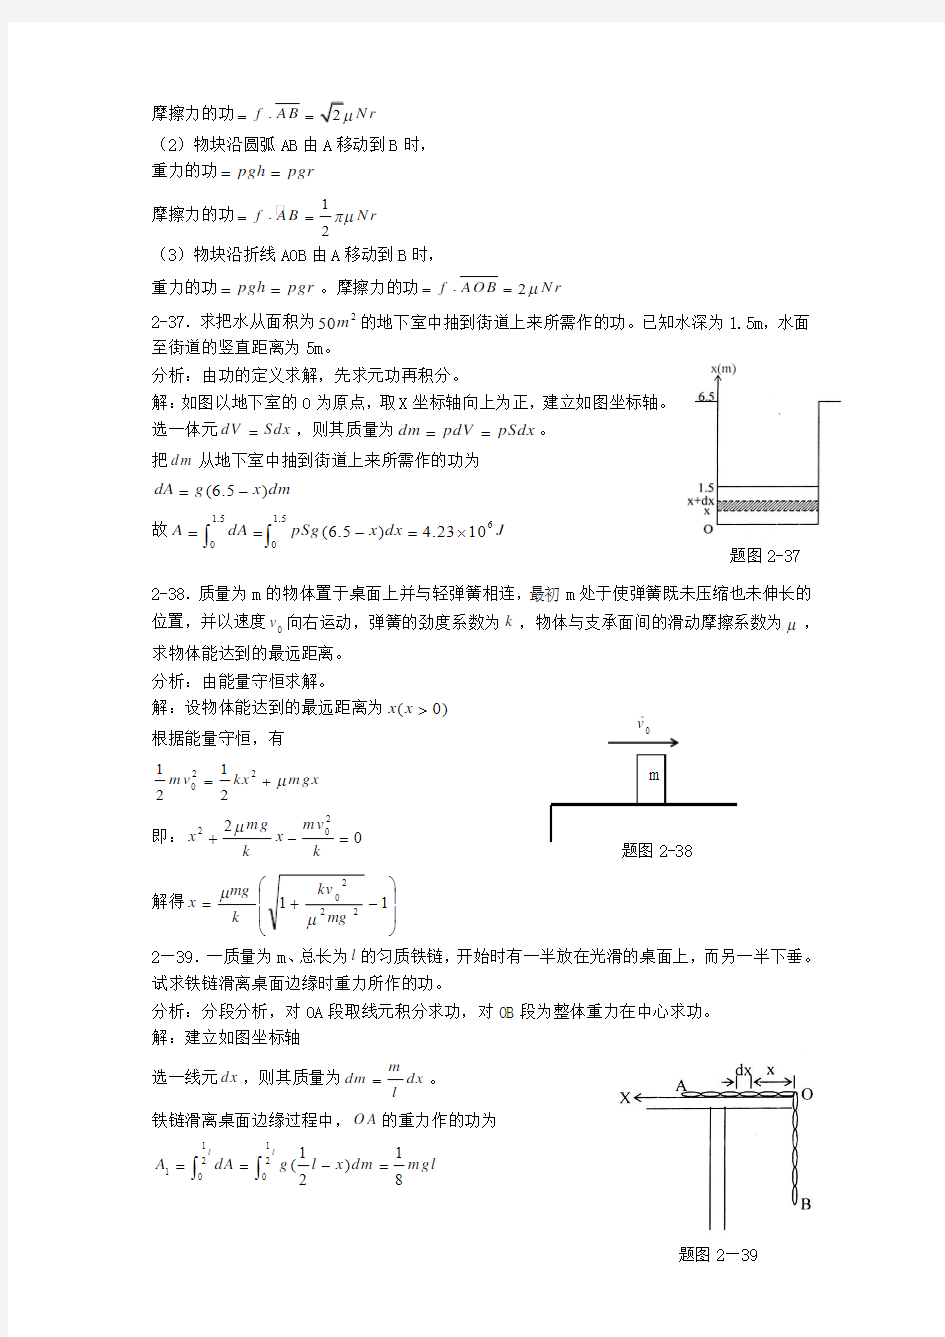 《新编基础物理学》(上册)第二章习题解答和分析3